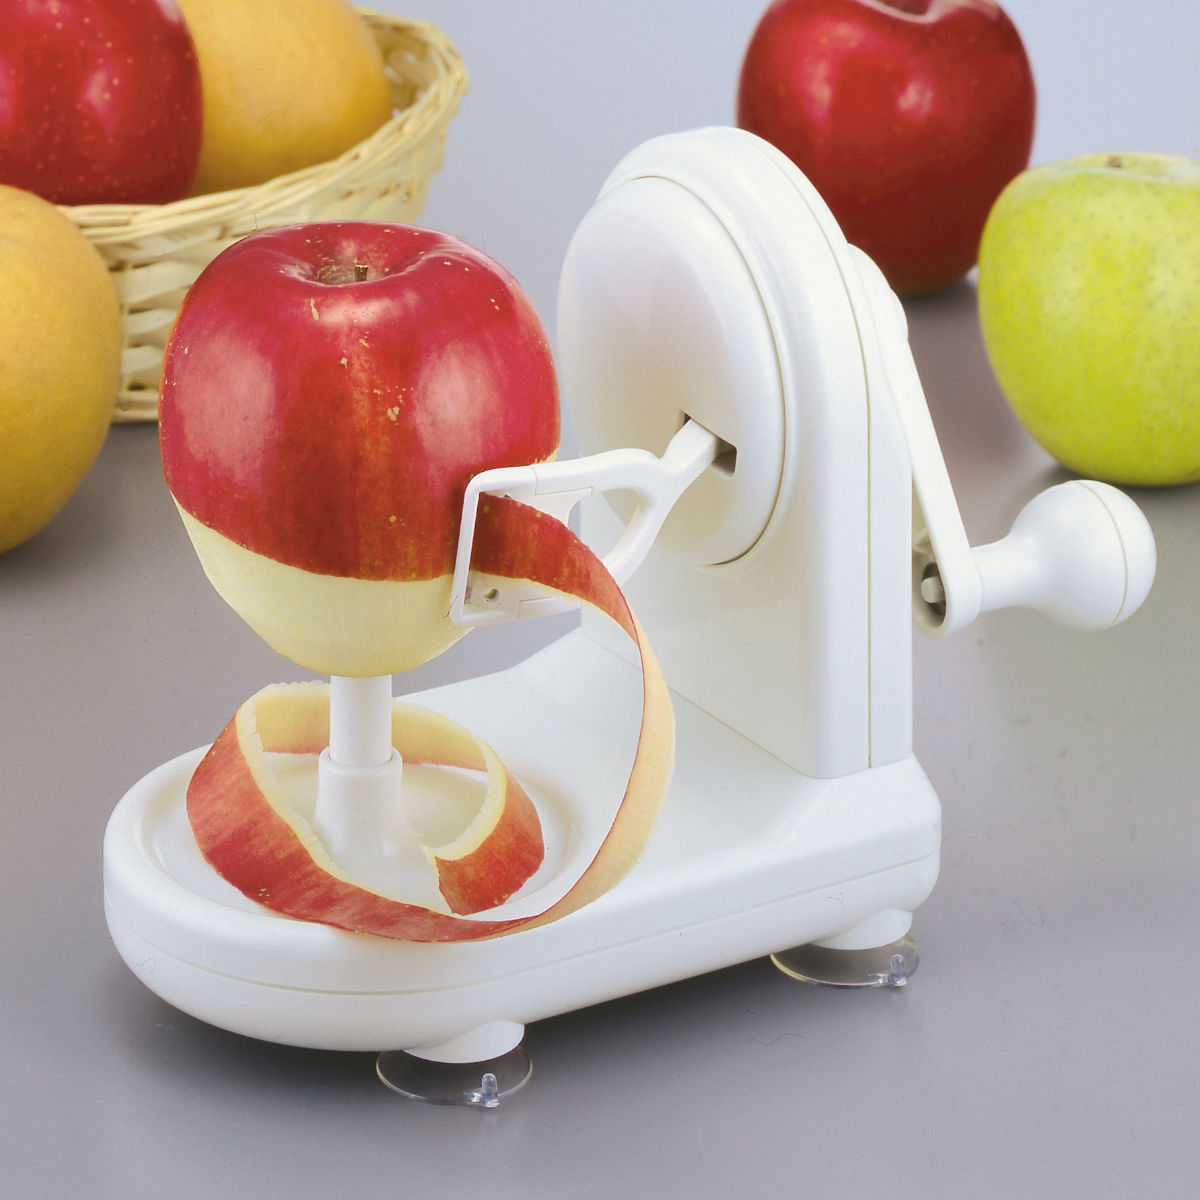 1年保証』 アップルピーラー りんご皮むき器 リンゴ 梨 皮むき 回転 